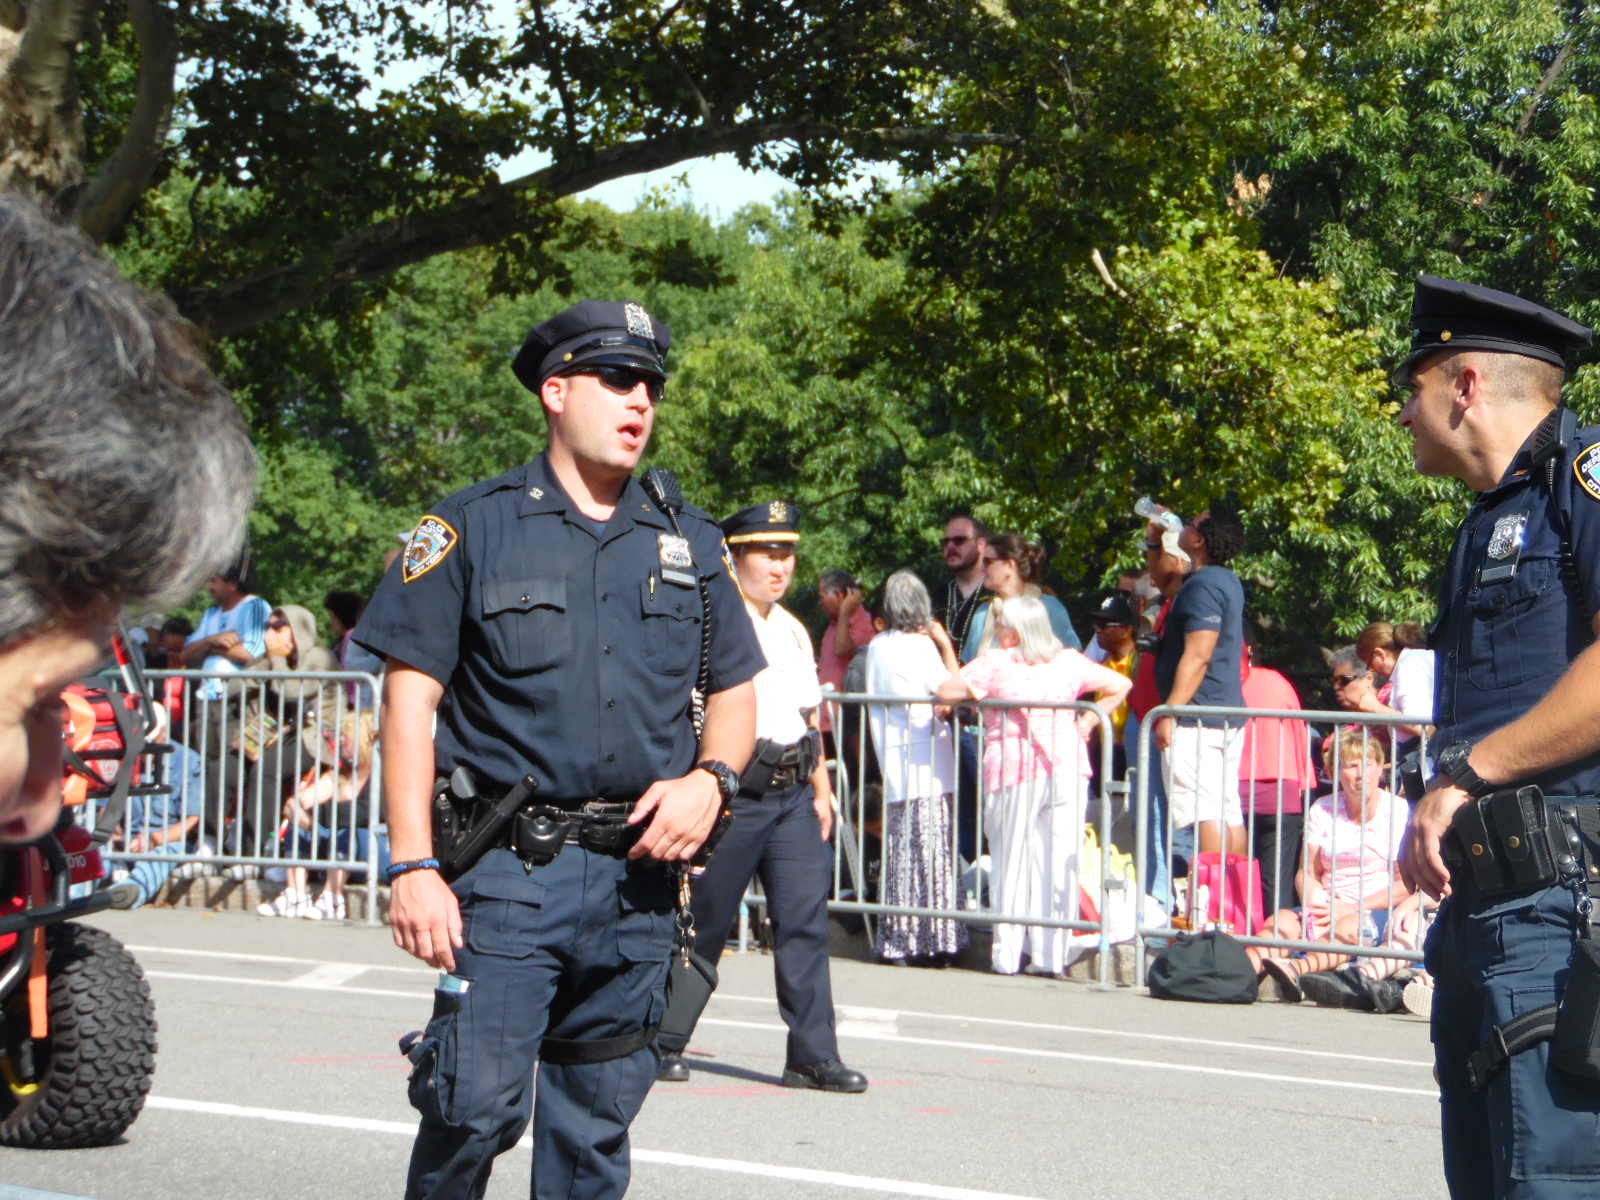 Police presence in the park.